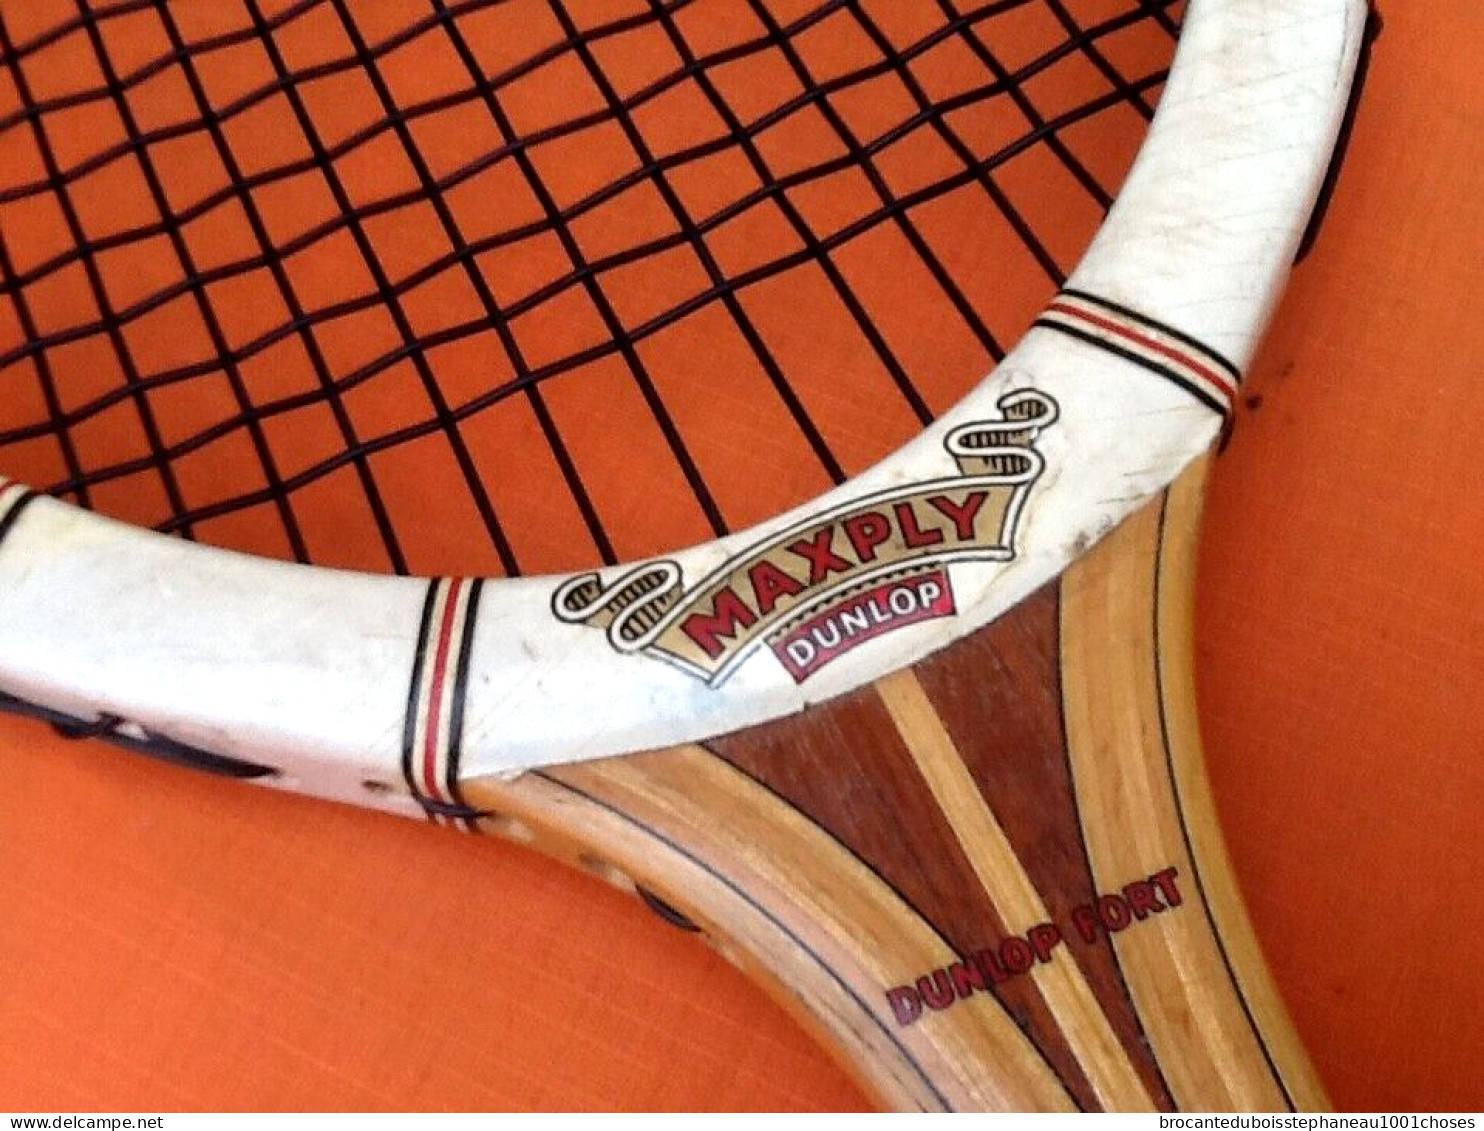 Raquette de Tennis en bois Maxply de Dunlop